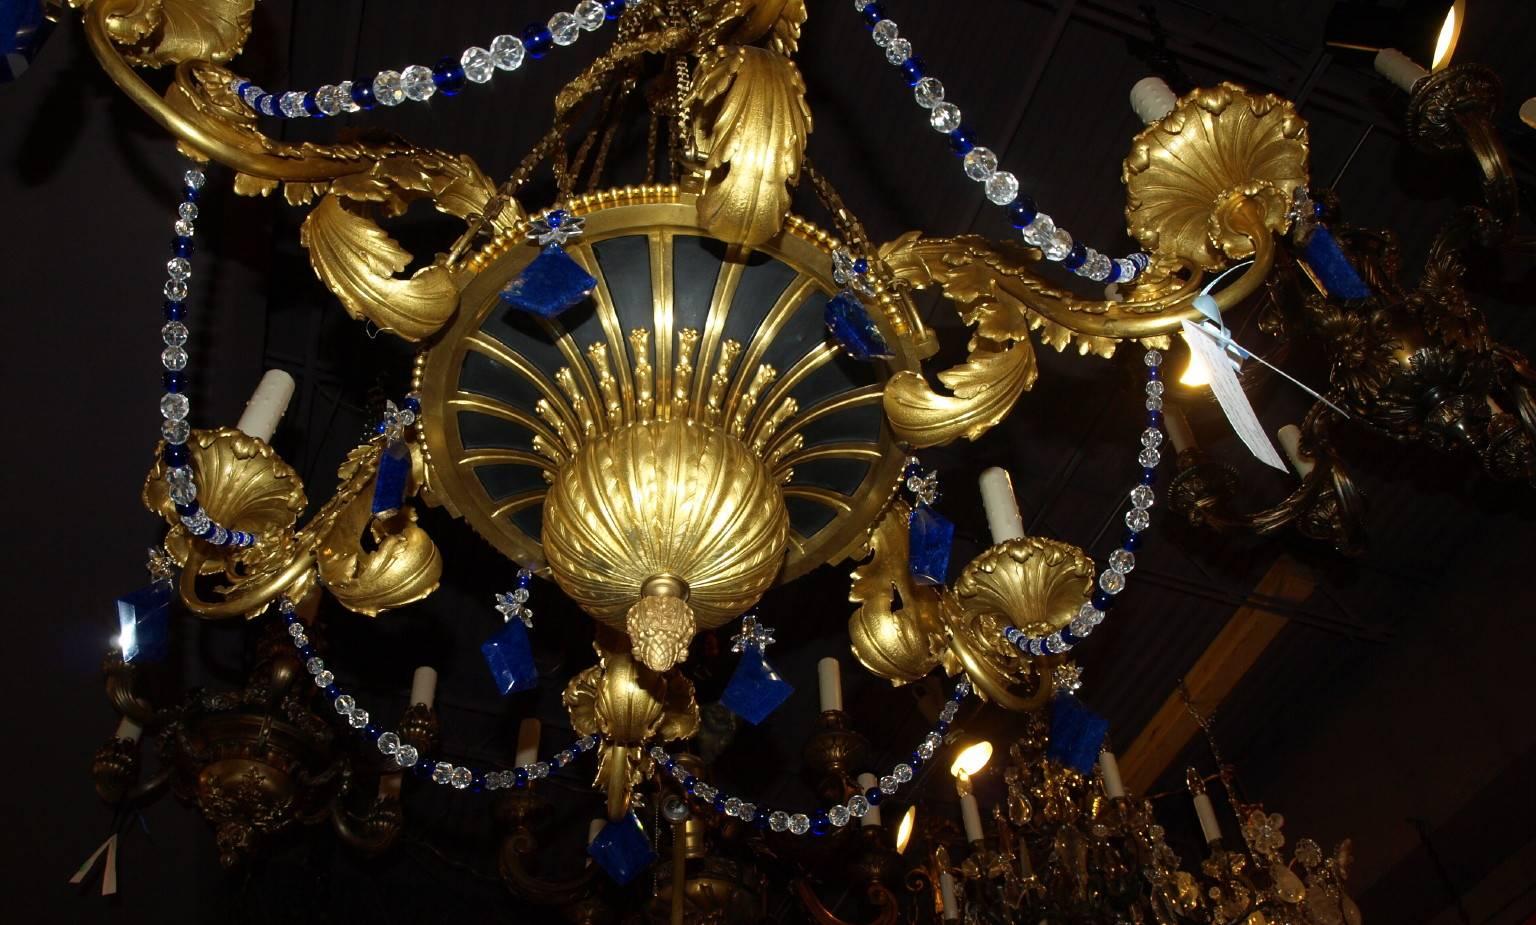 russian chandelier